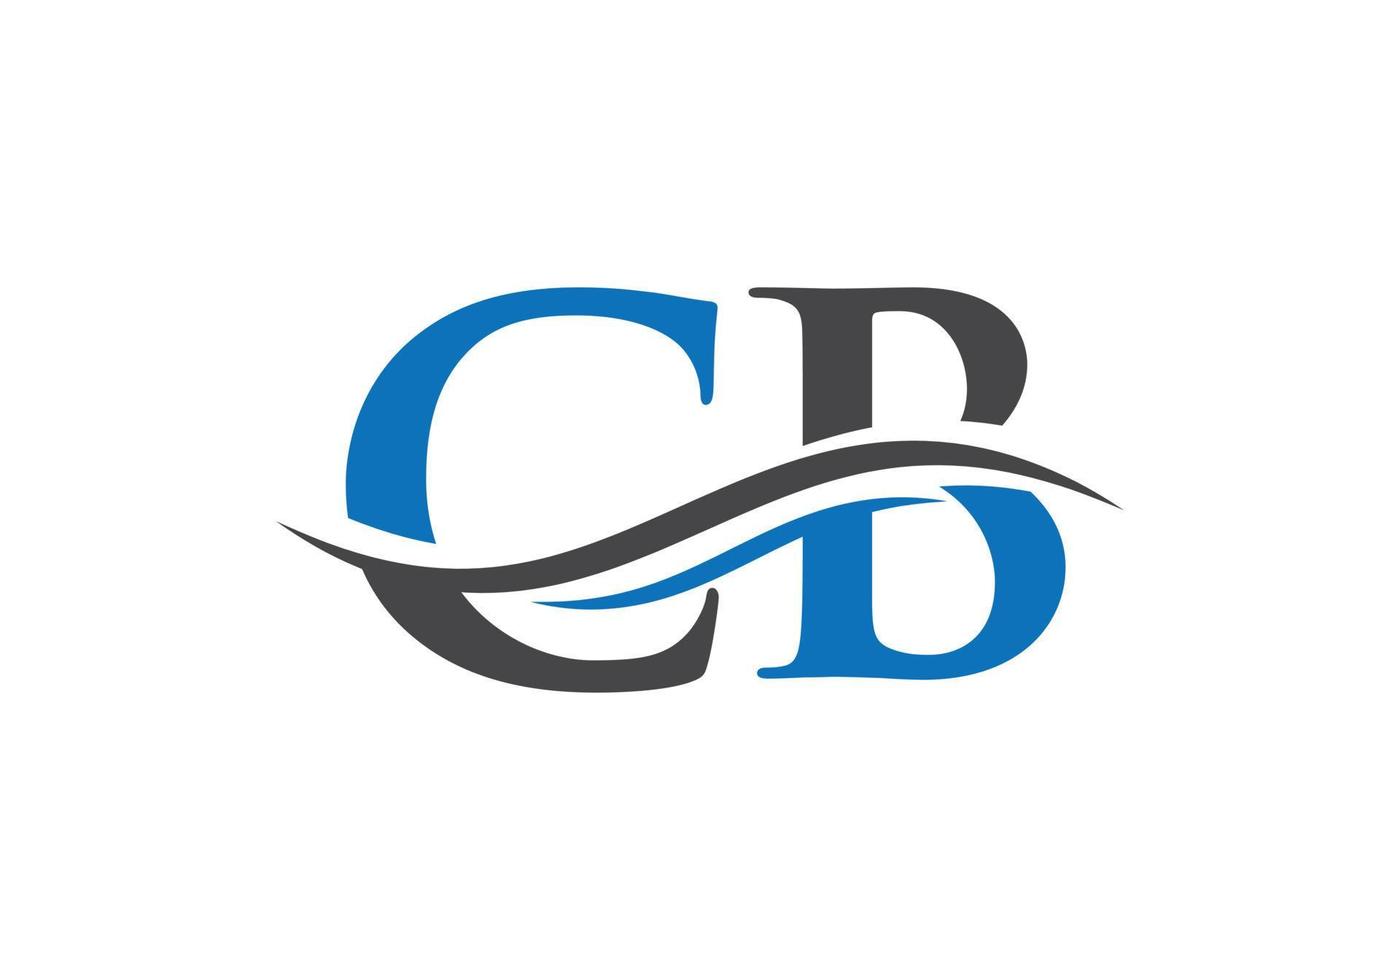 logo lié cb pour l'entreprise et l'identité de l'entreprise. vecteur de logo créatif lettre cb